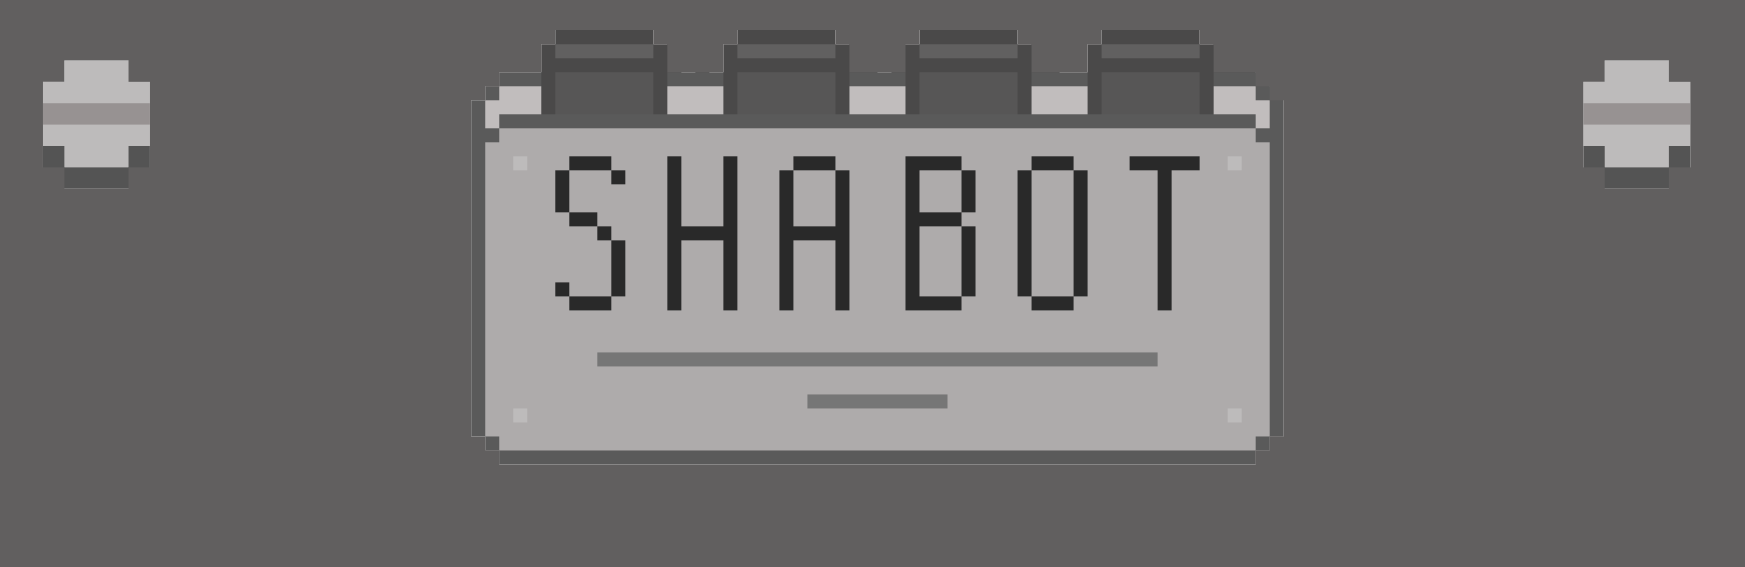 Shabot